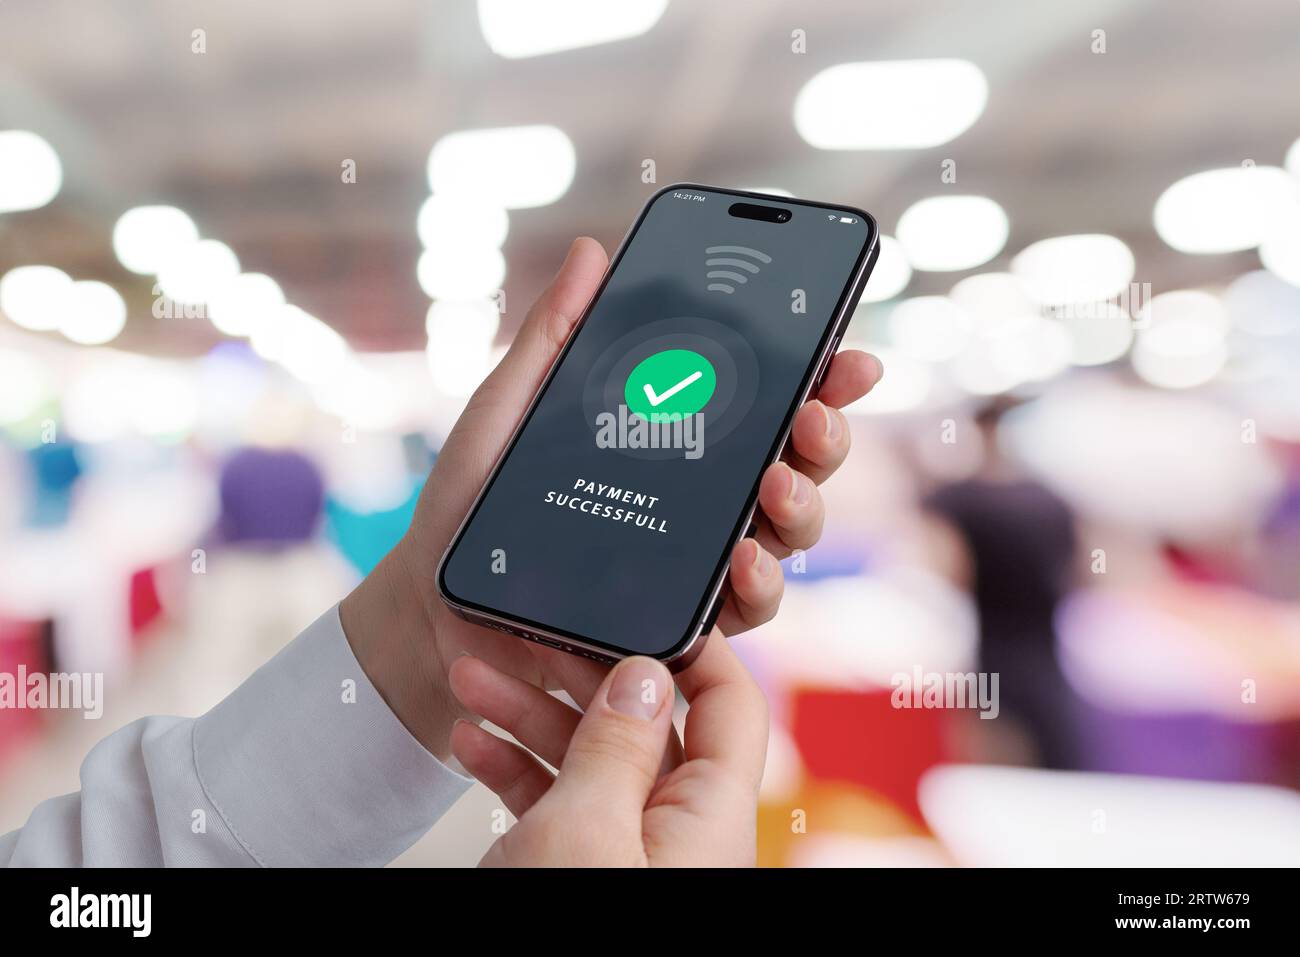 Mobiltelefon in den Händen mit erfolgreicher Zahlungsbenachrichtigung in einem Einkaufsgeschäft, das moderne Transaktionen für einen entzückenden Einkaufswagen zeigt Stockfoto